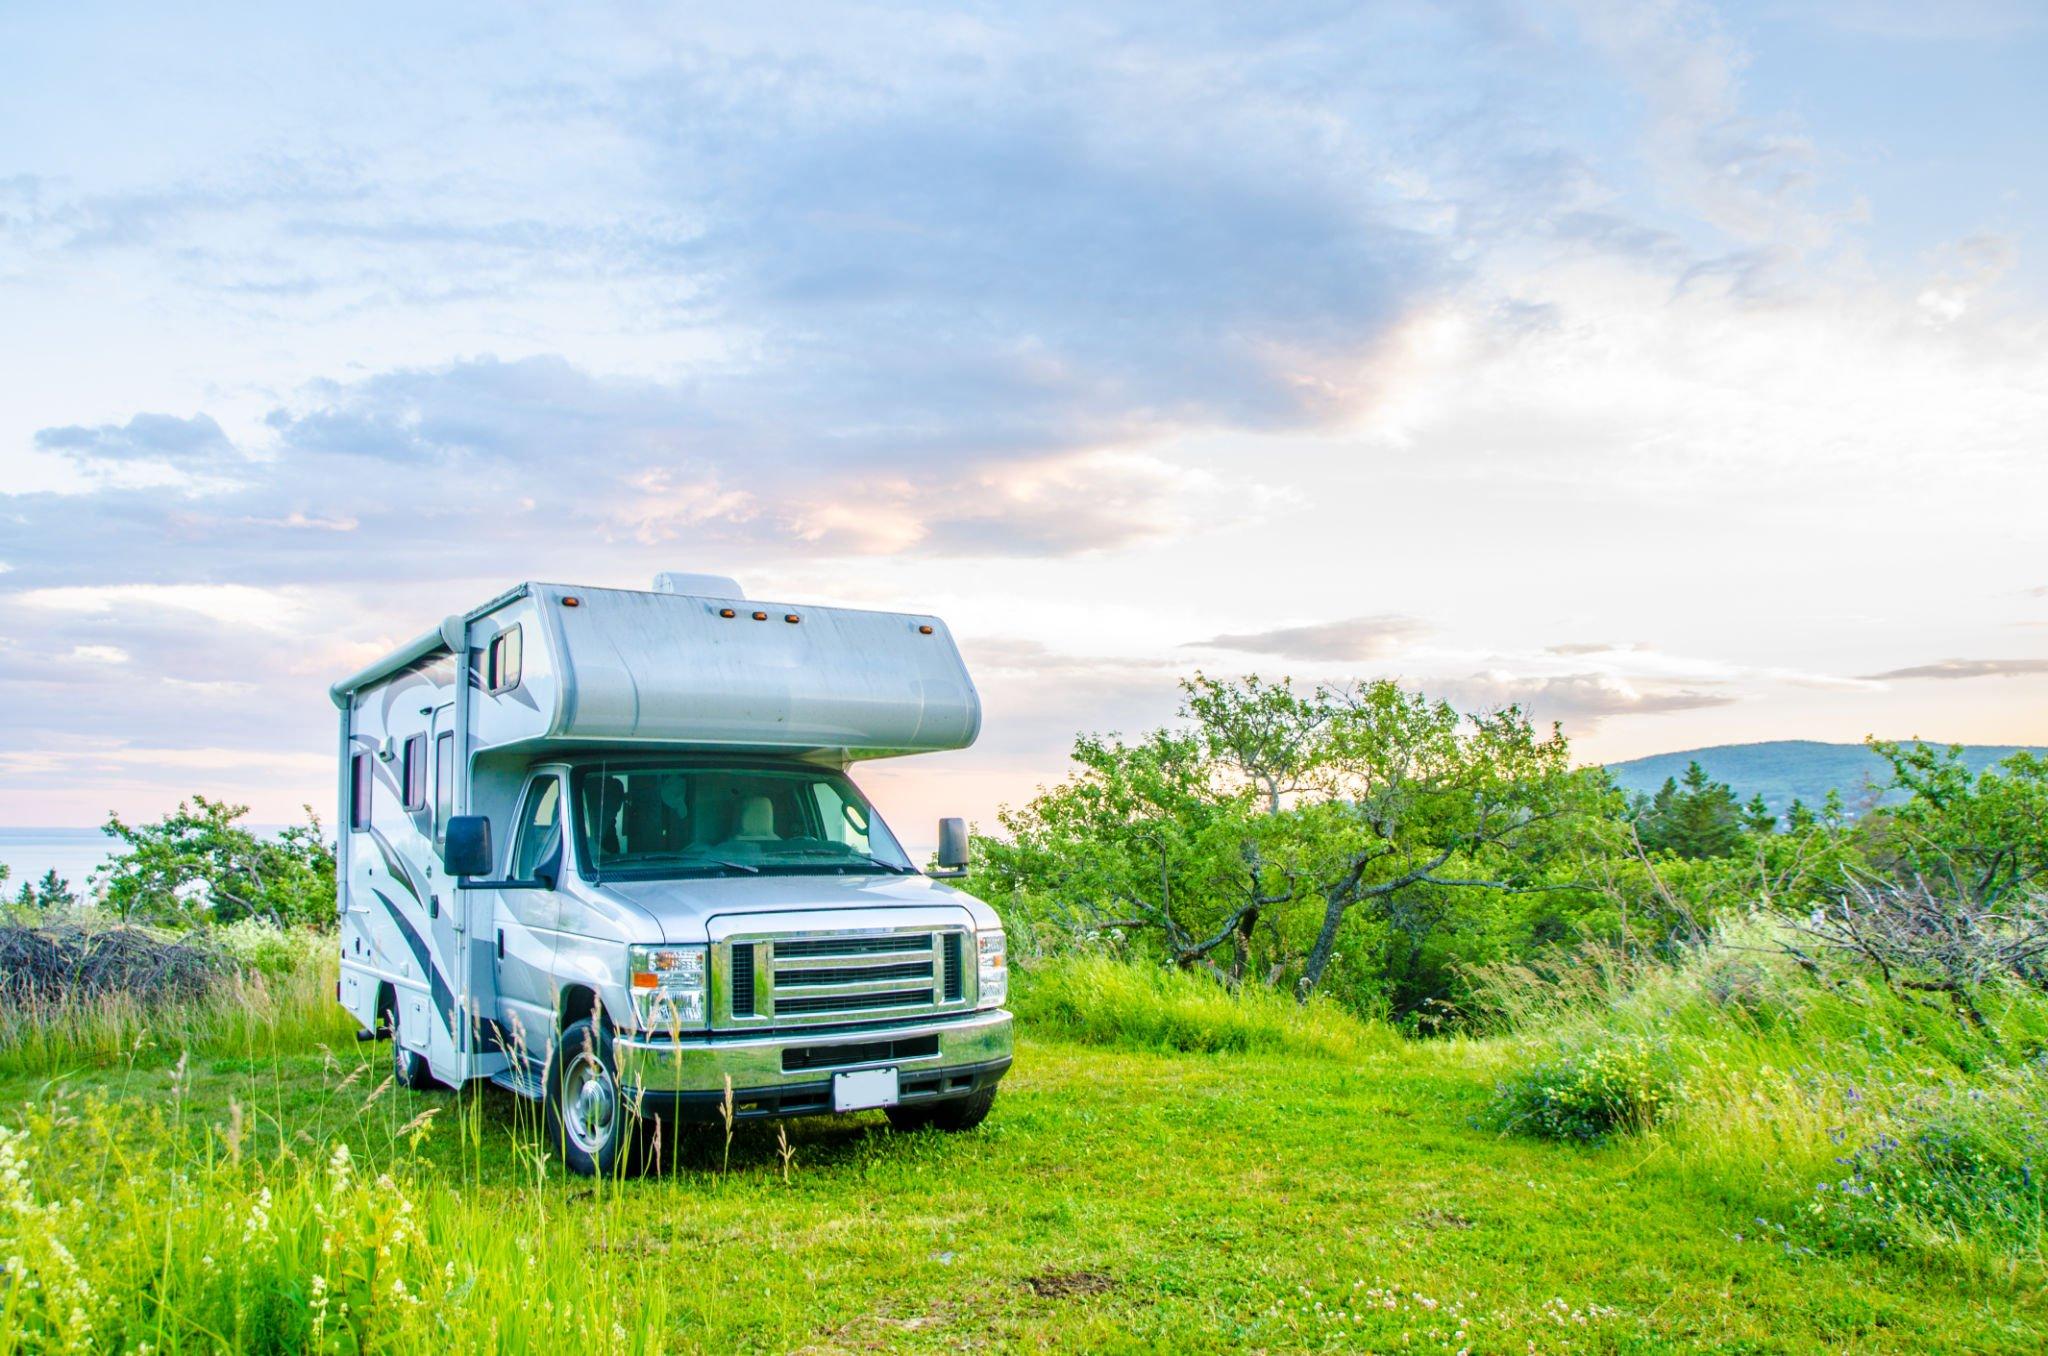 should your campervan provide